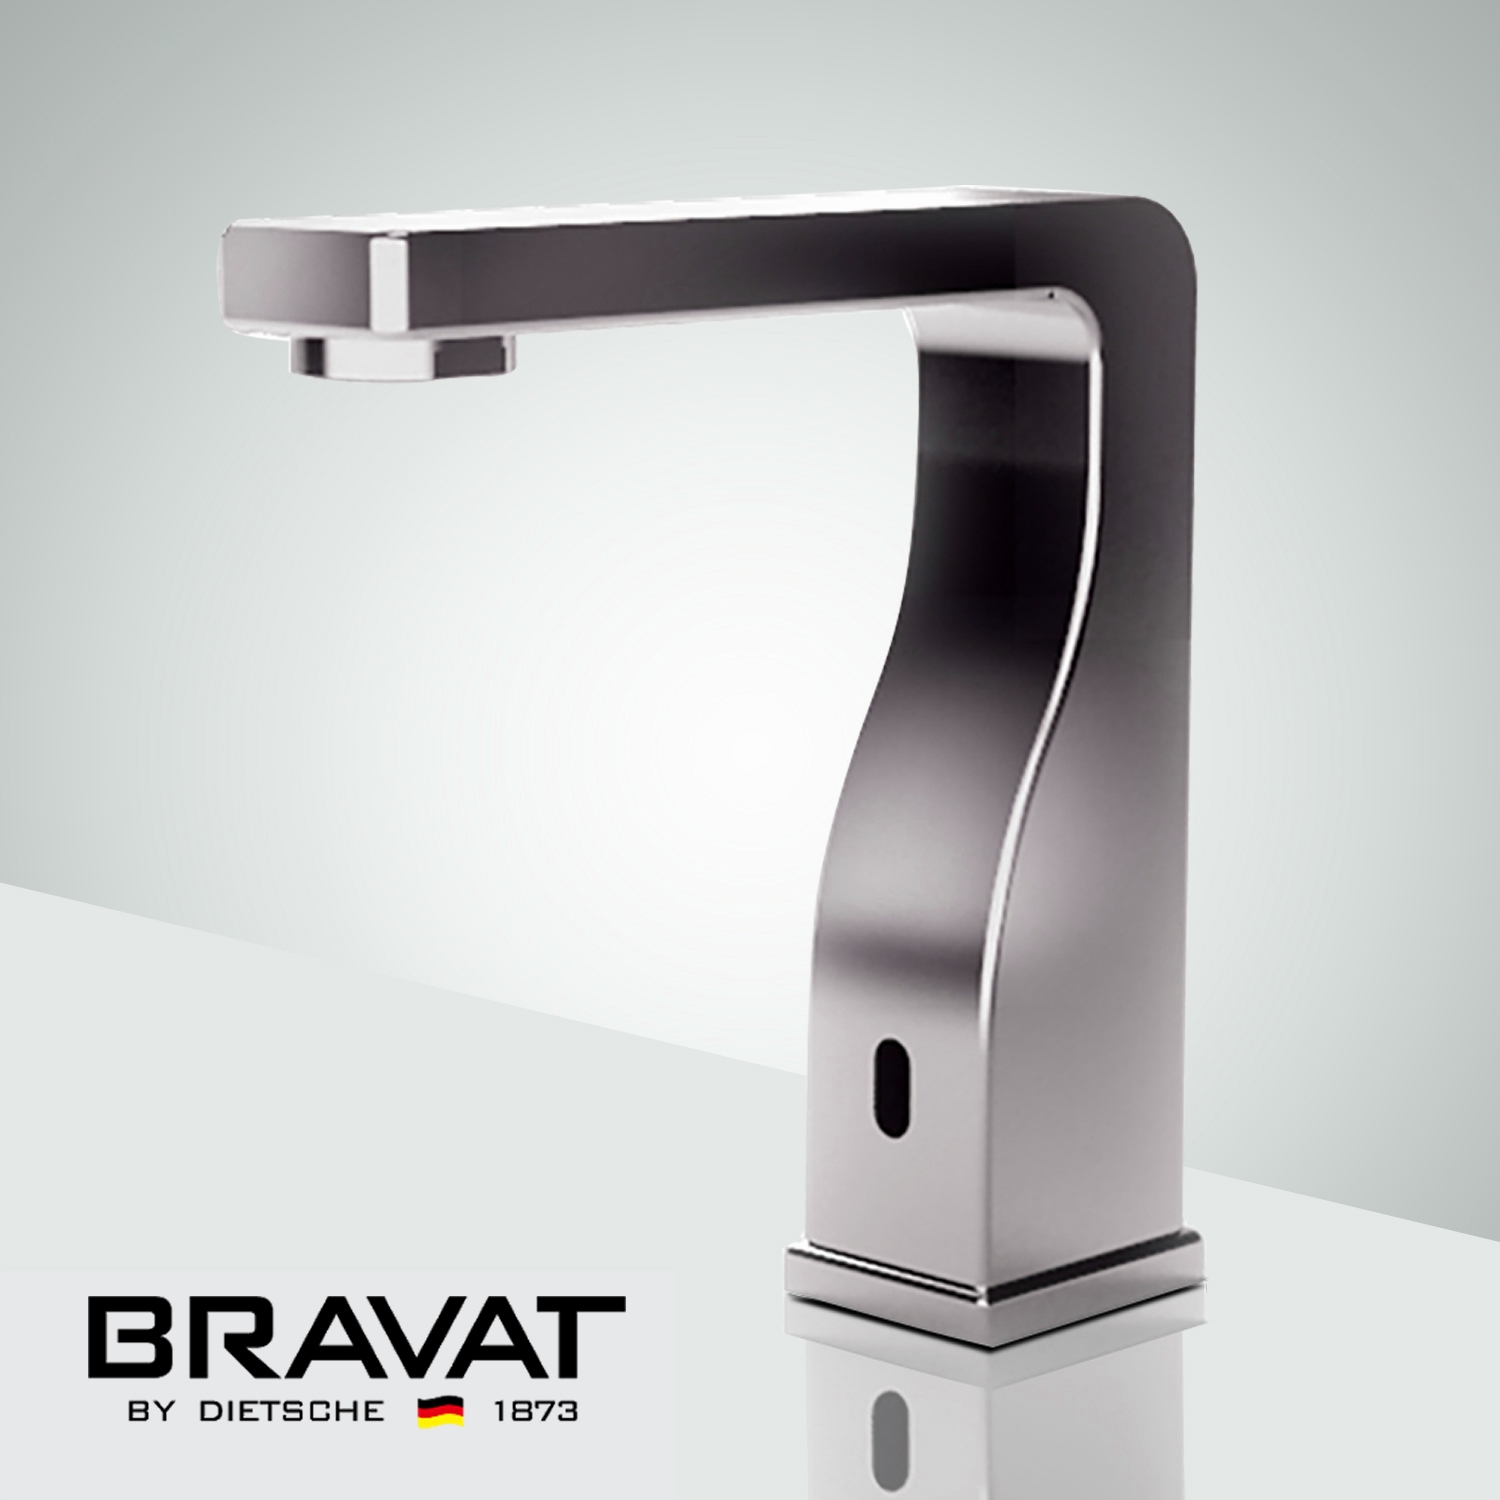 Bravat Commercial Automatic Hands Free Sensor Faucets